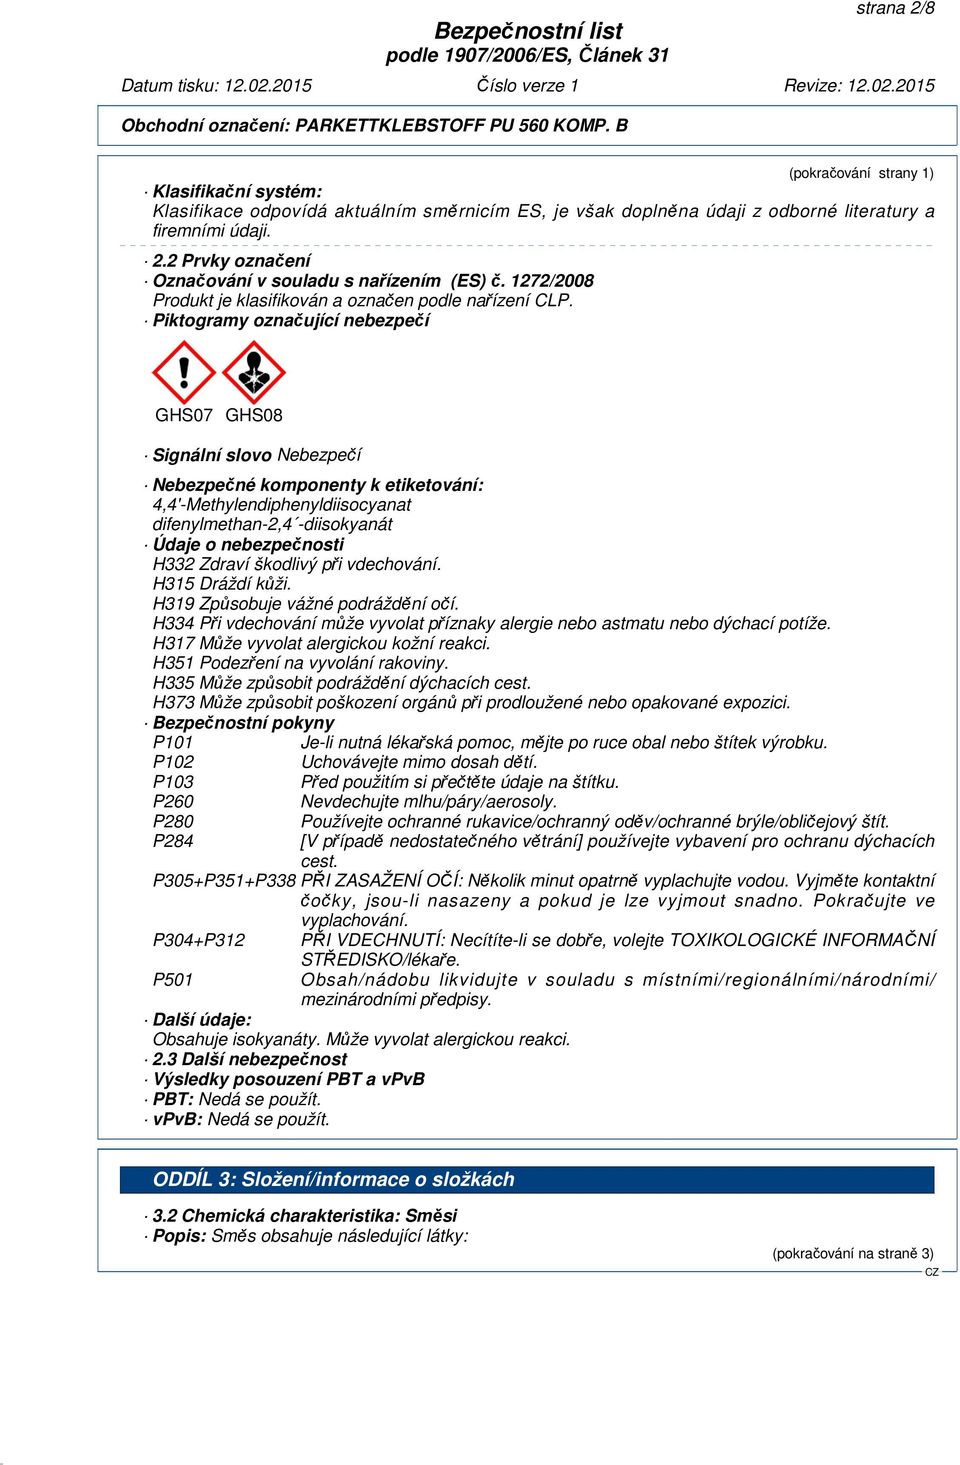 Piktogramy označující nebezpečí GHS07 GHS08 Signální slovo Nebezpečí Nebezpečné komponenty k etiketování: difenylmethan-2,4 -diisokyanát Údaje o nebezpečnosti H332 Zdraví škodlivý při vdechování.